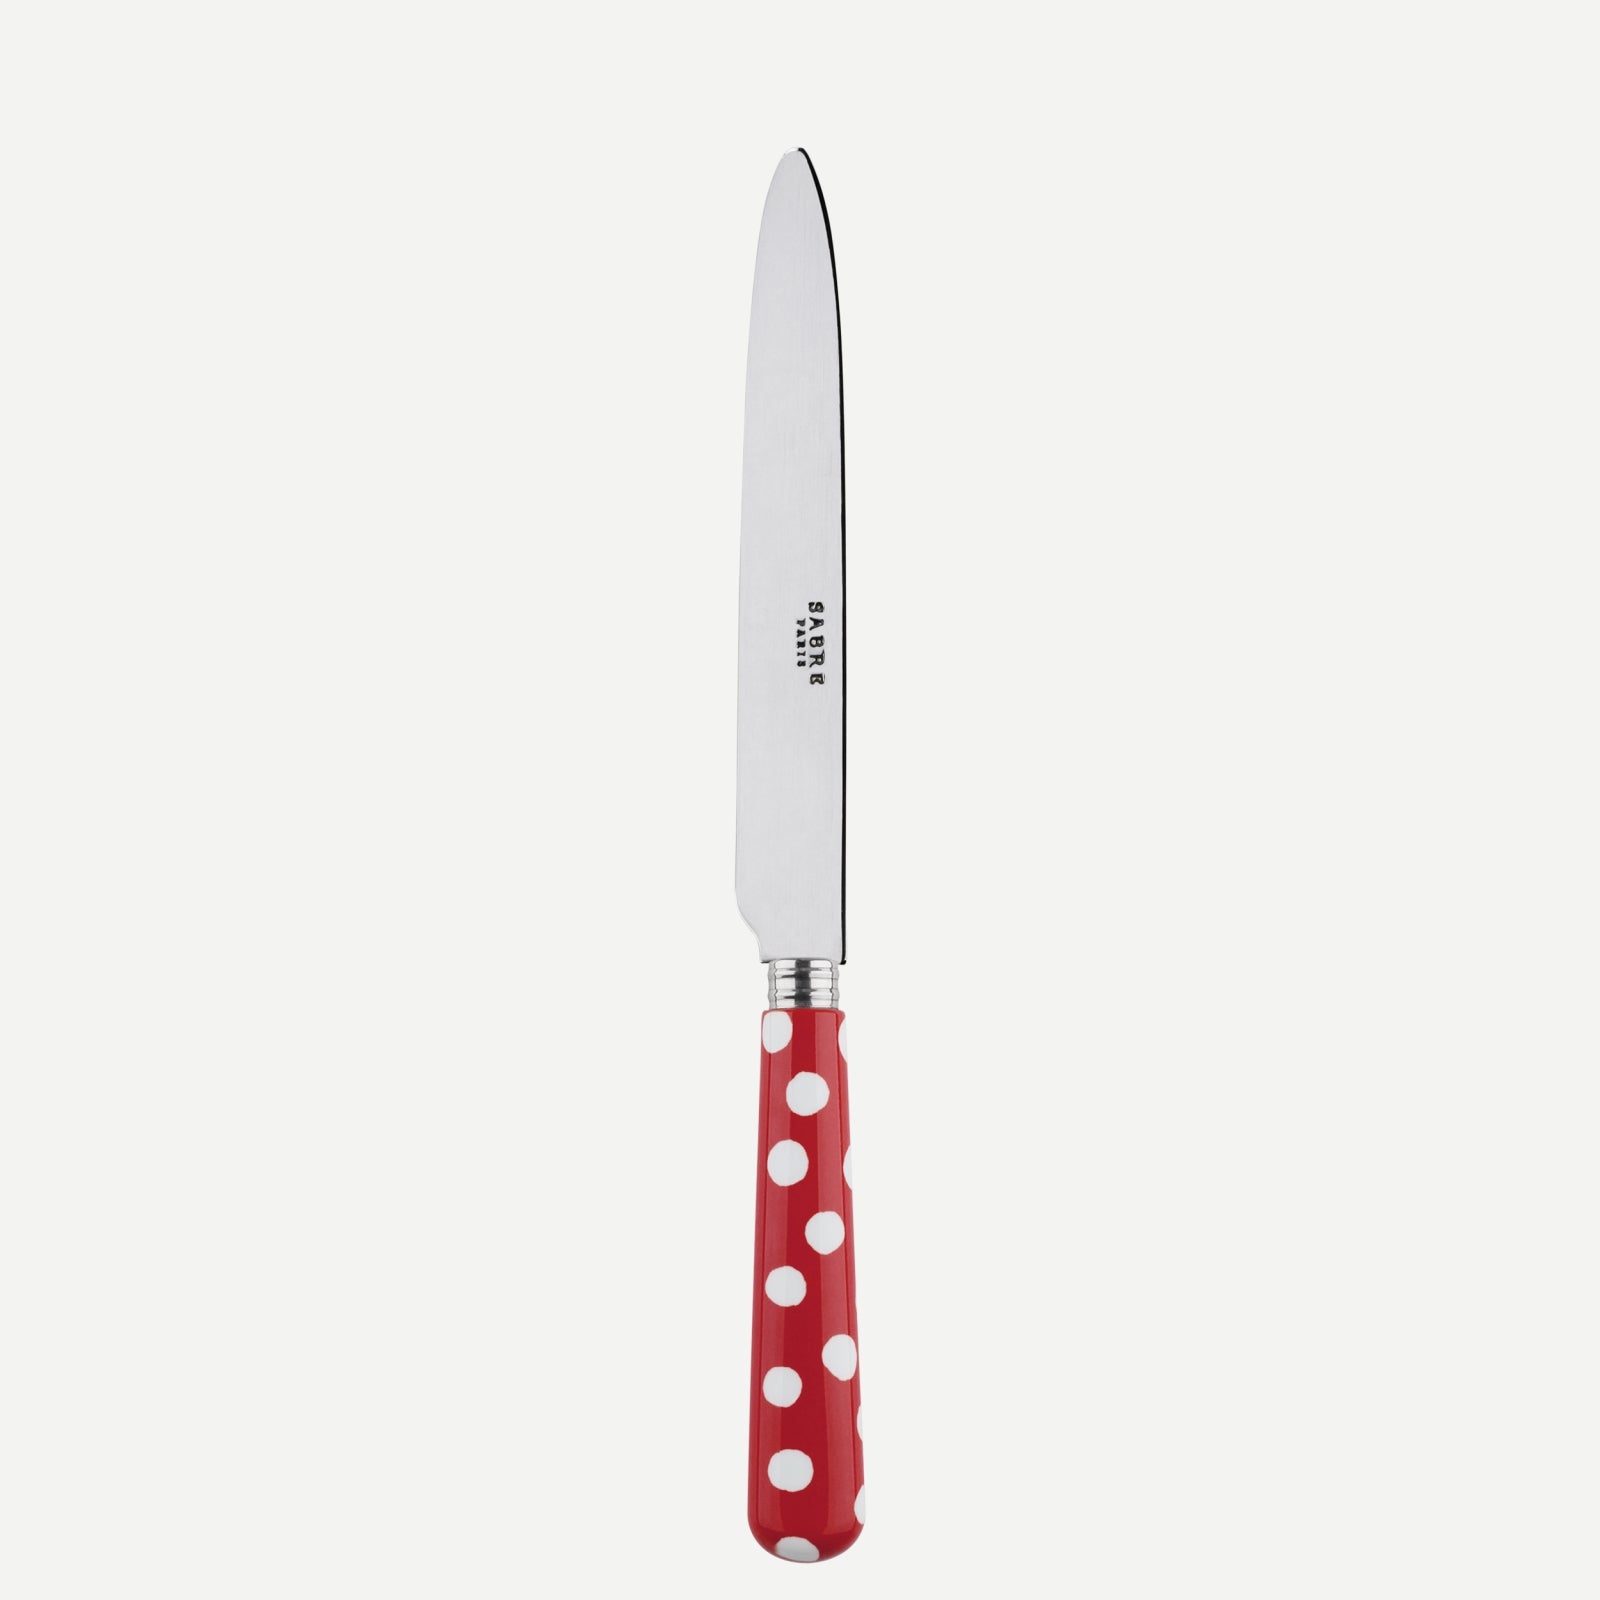 Dinner knife - White Dots. - Red